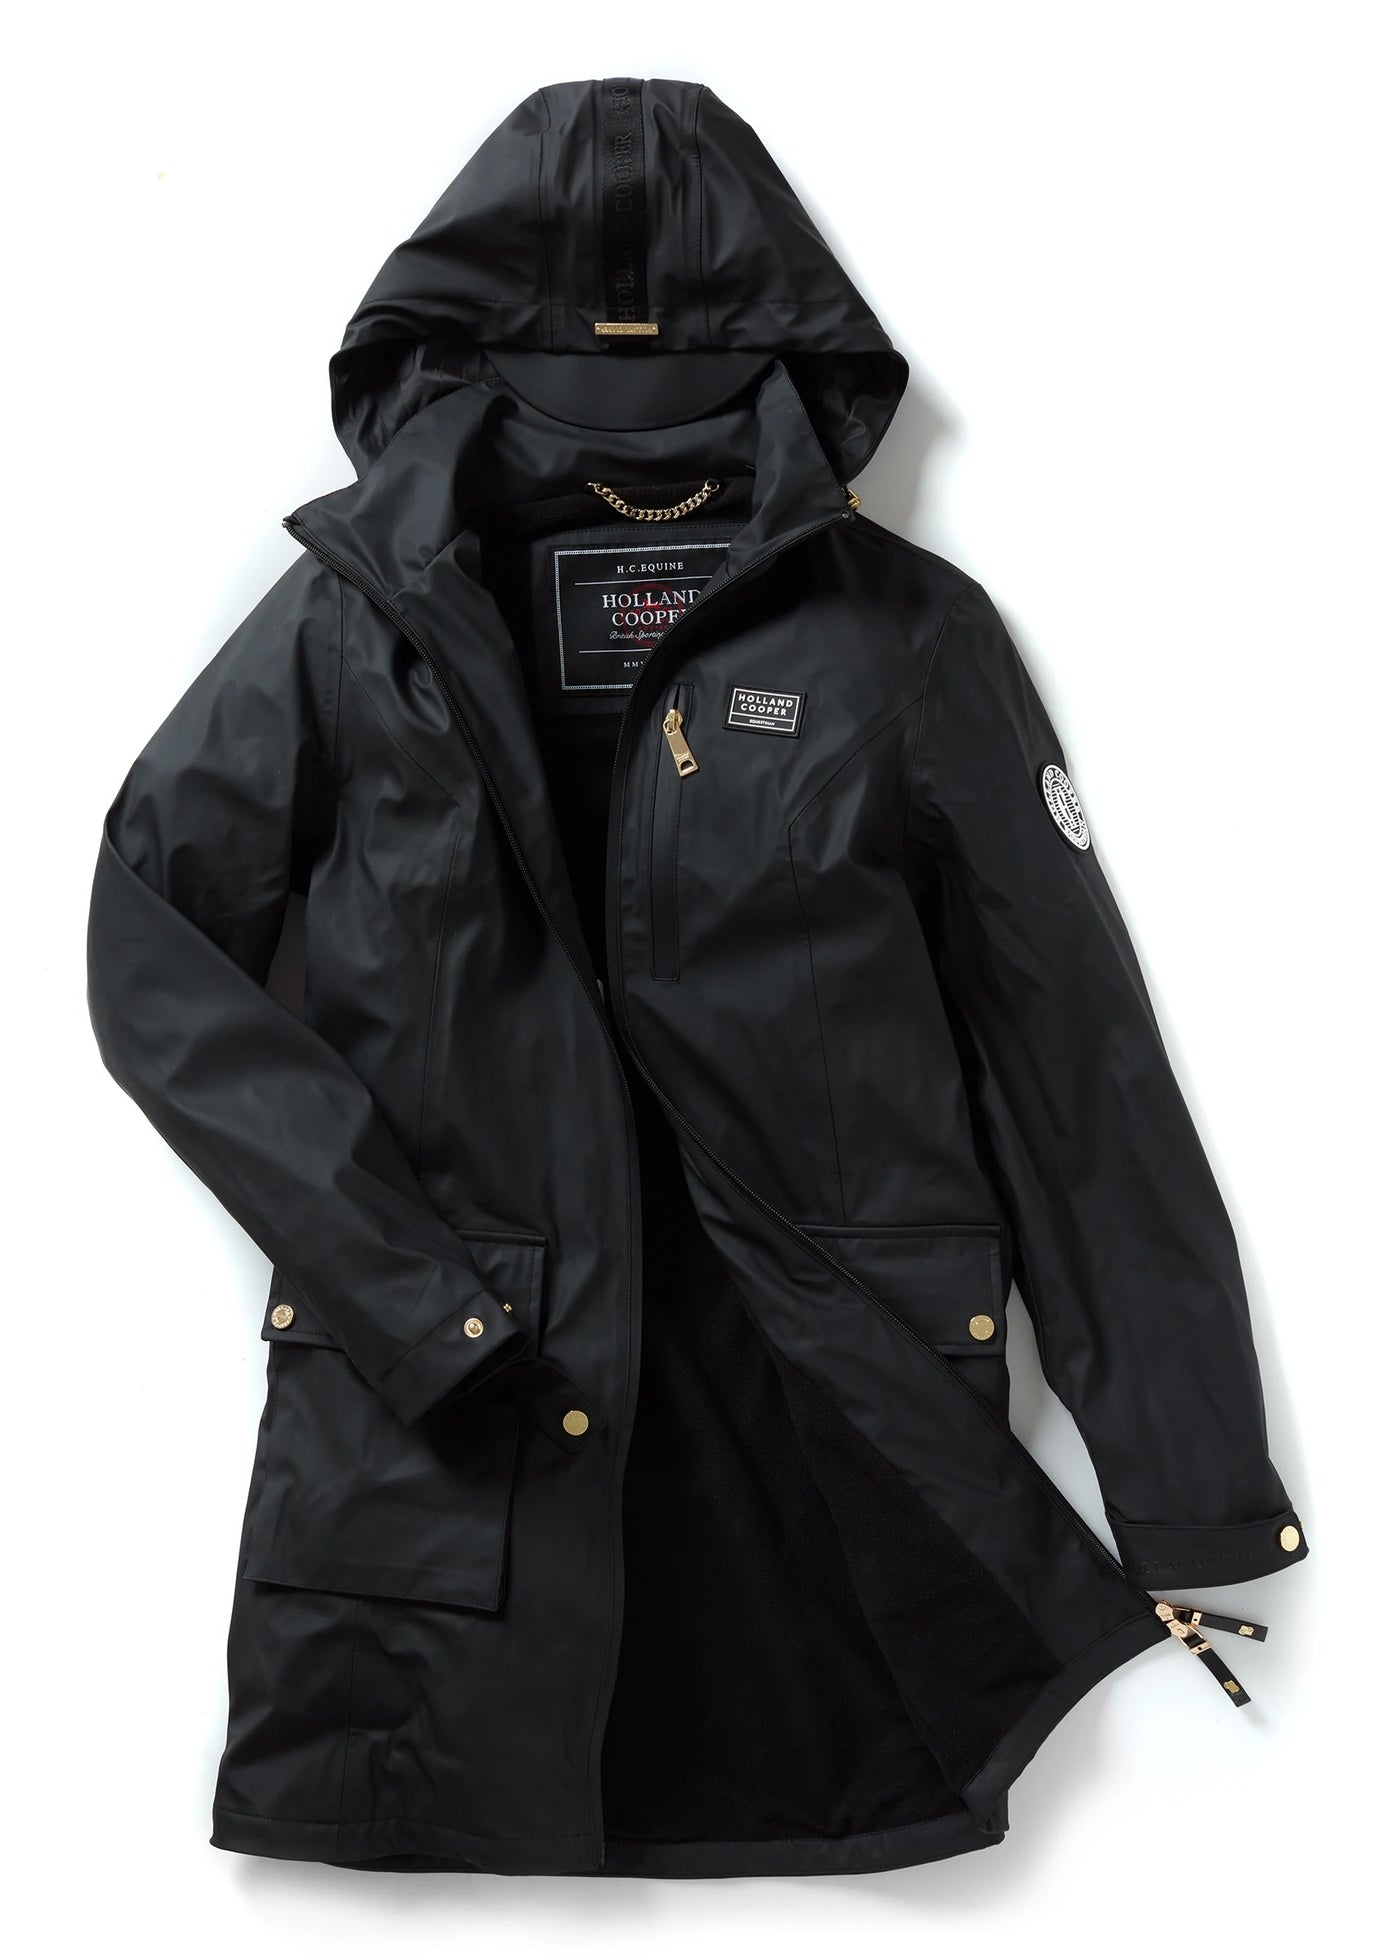 Holland Cooper Brecon Rain Coat in Black